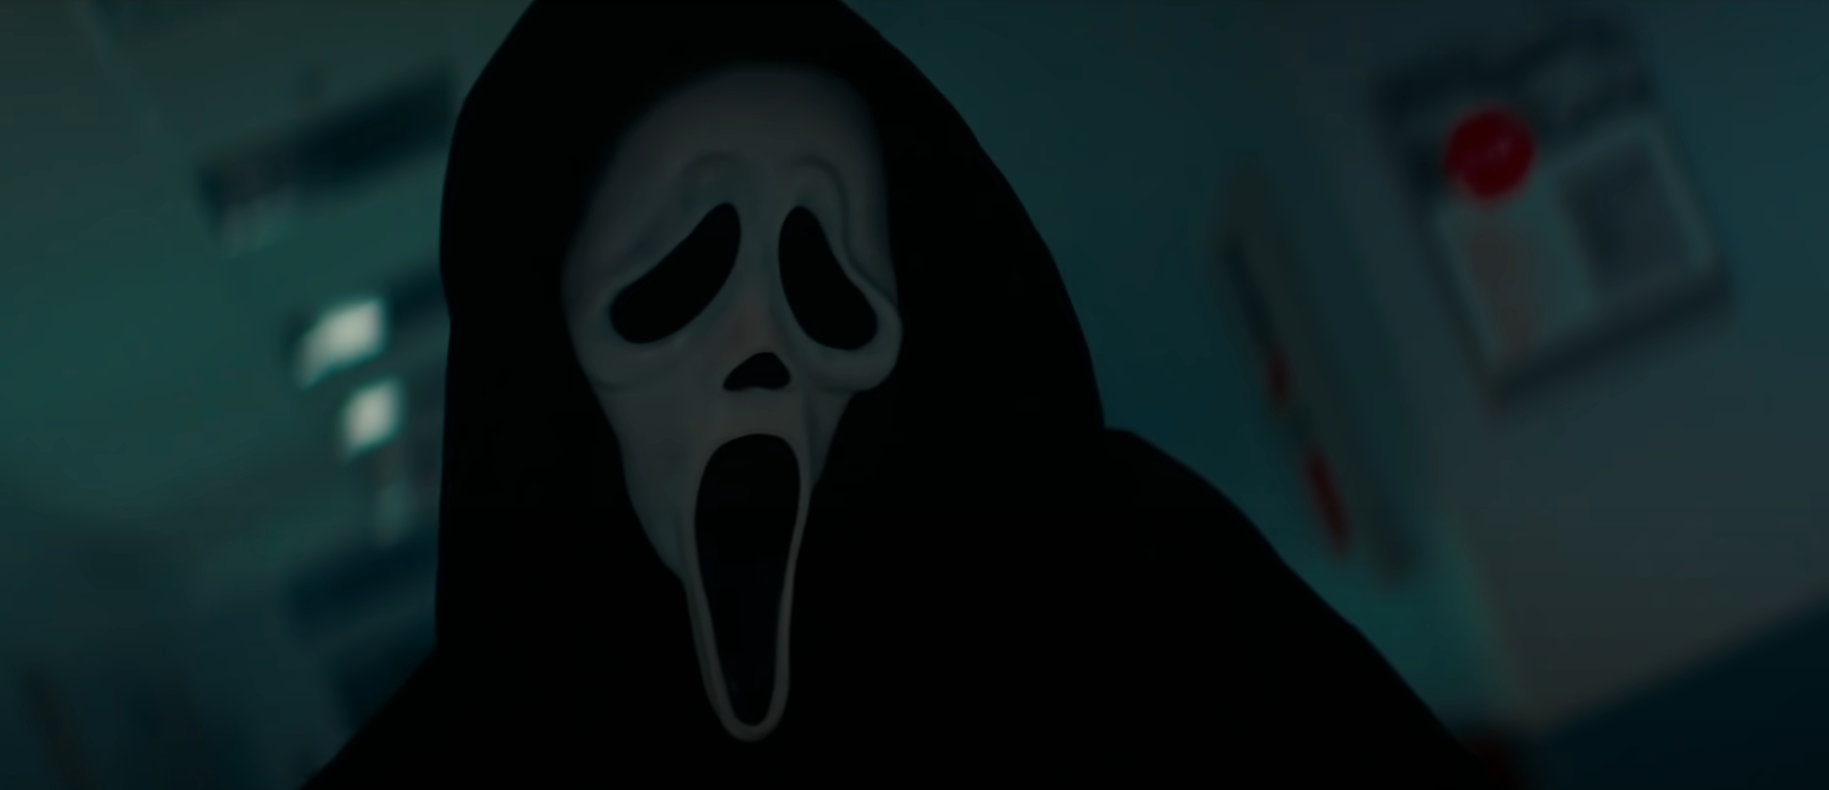 Scream 6 release date announced